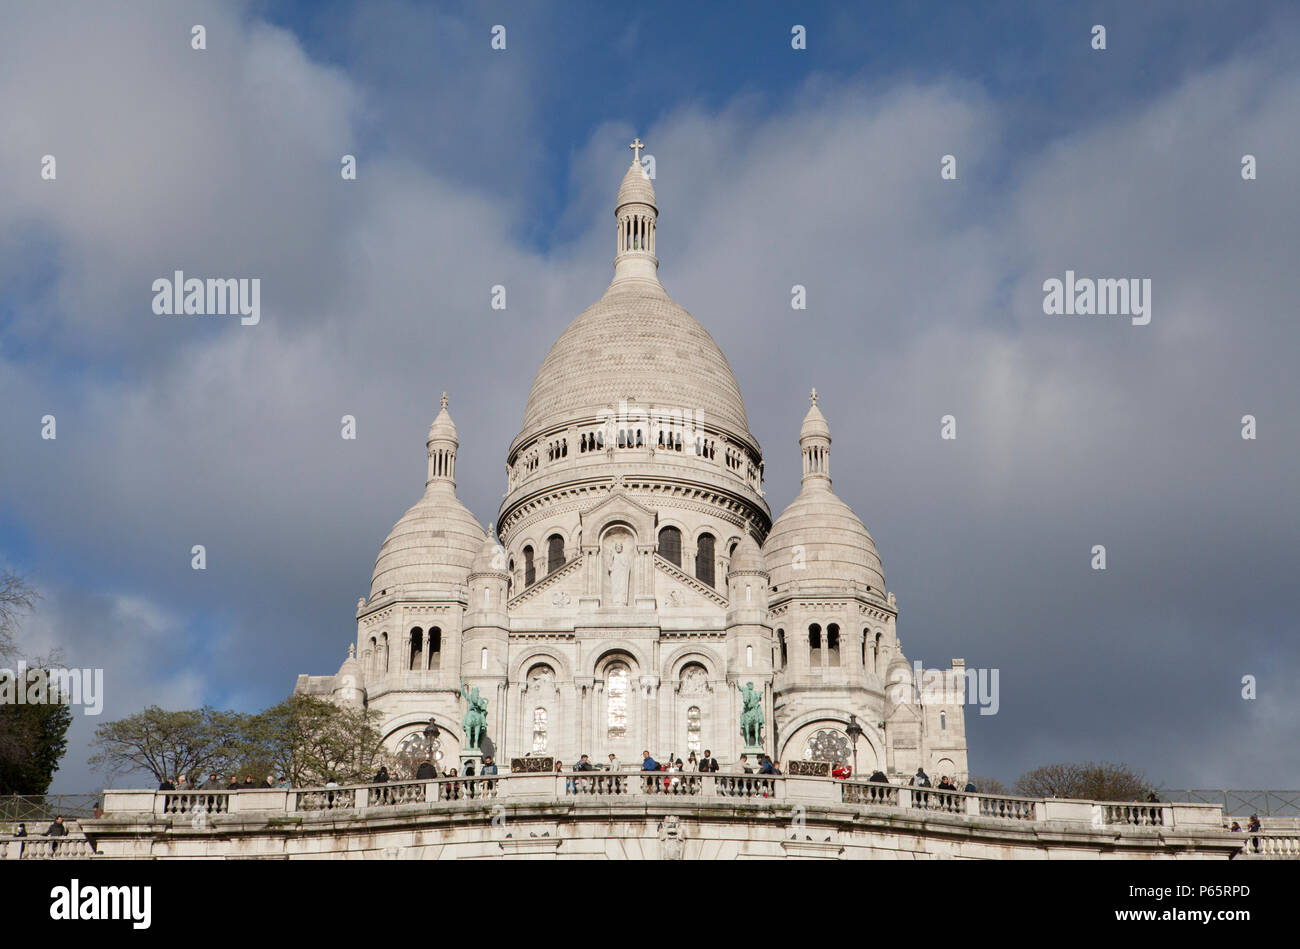 La Basilica del Sacro Cuore di Parigi, comunemente Sacré-Coeur basilica si affaccia sulla città di Parigi ed è una delle principali attrazioni turistiche di hotspot Foto Stock